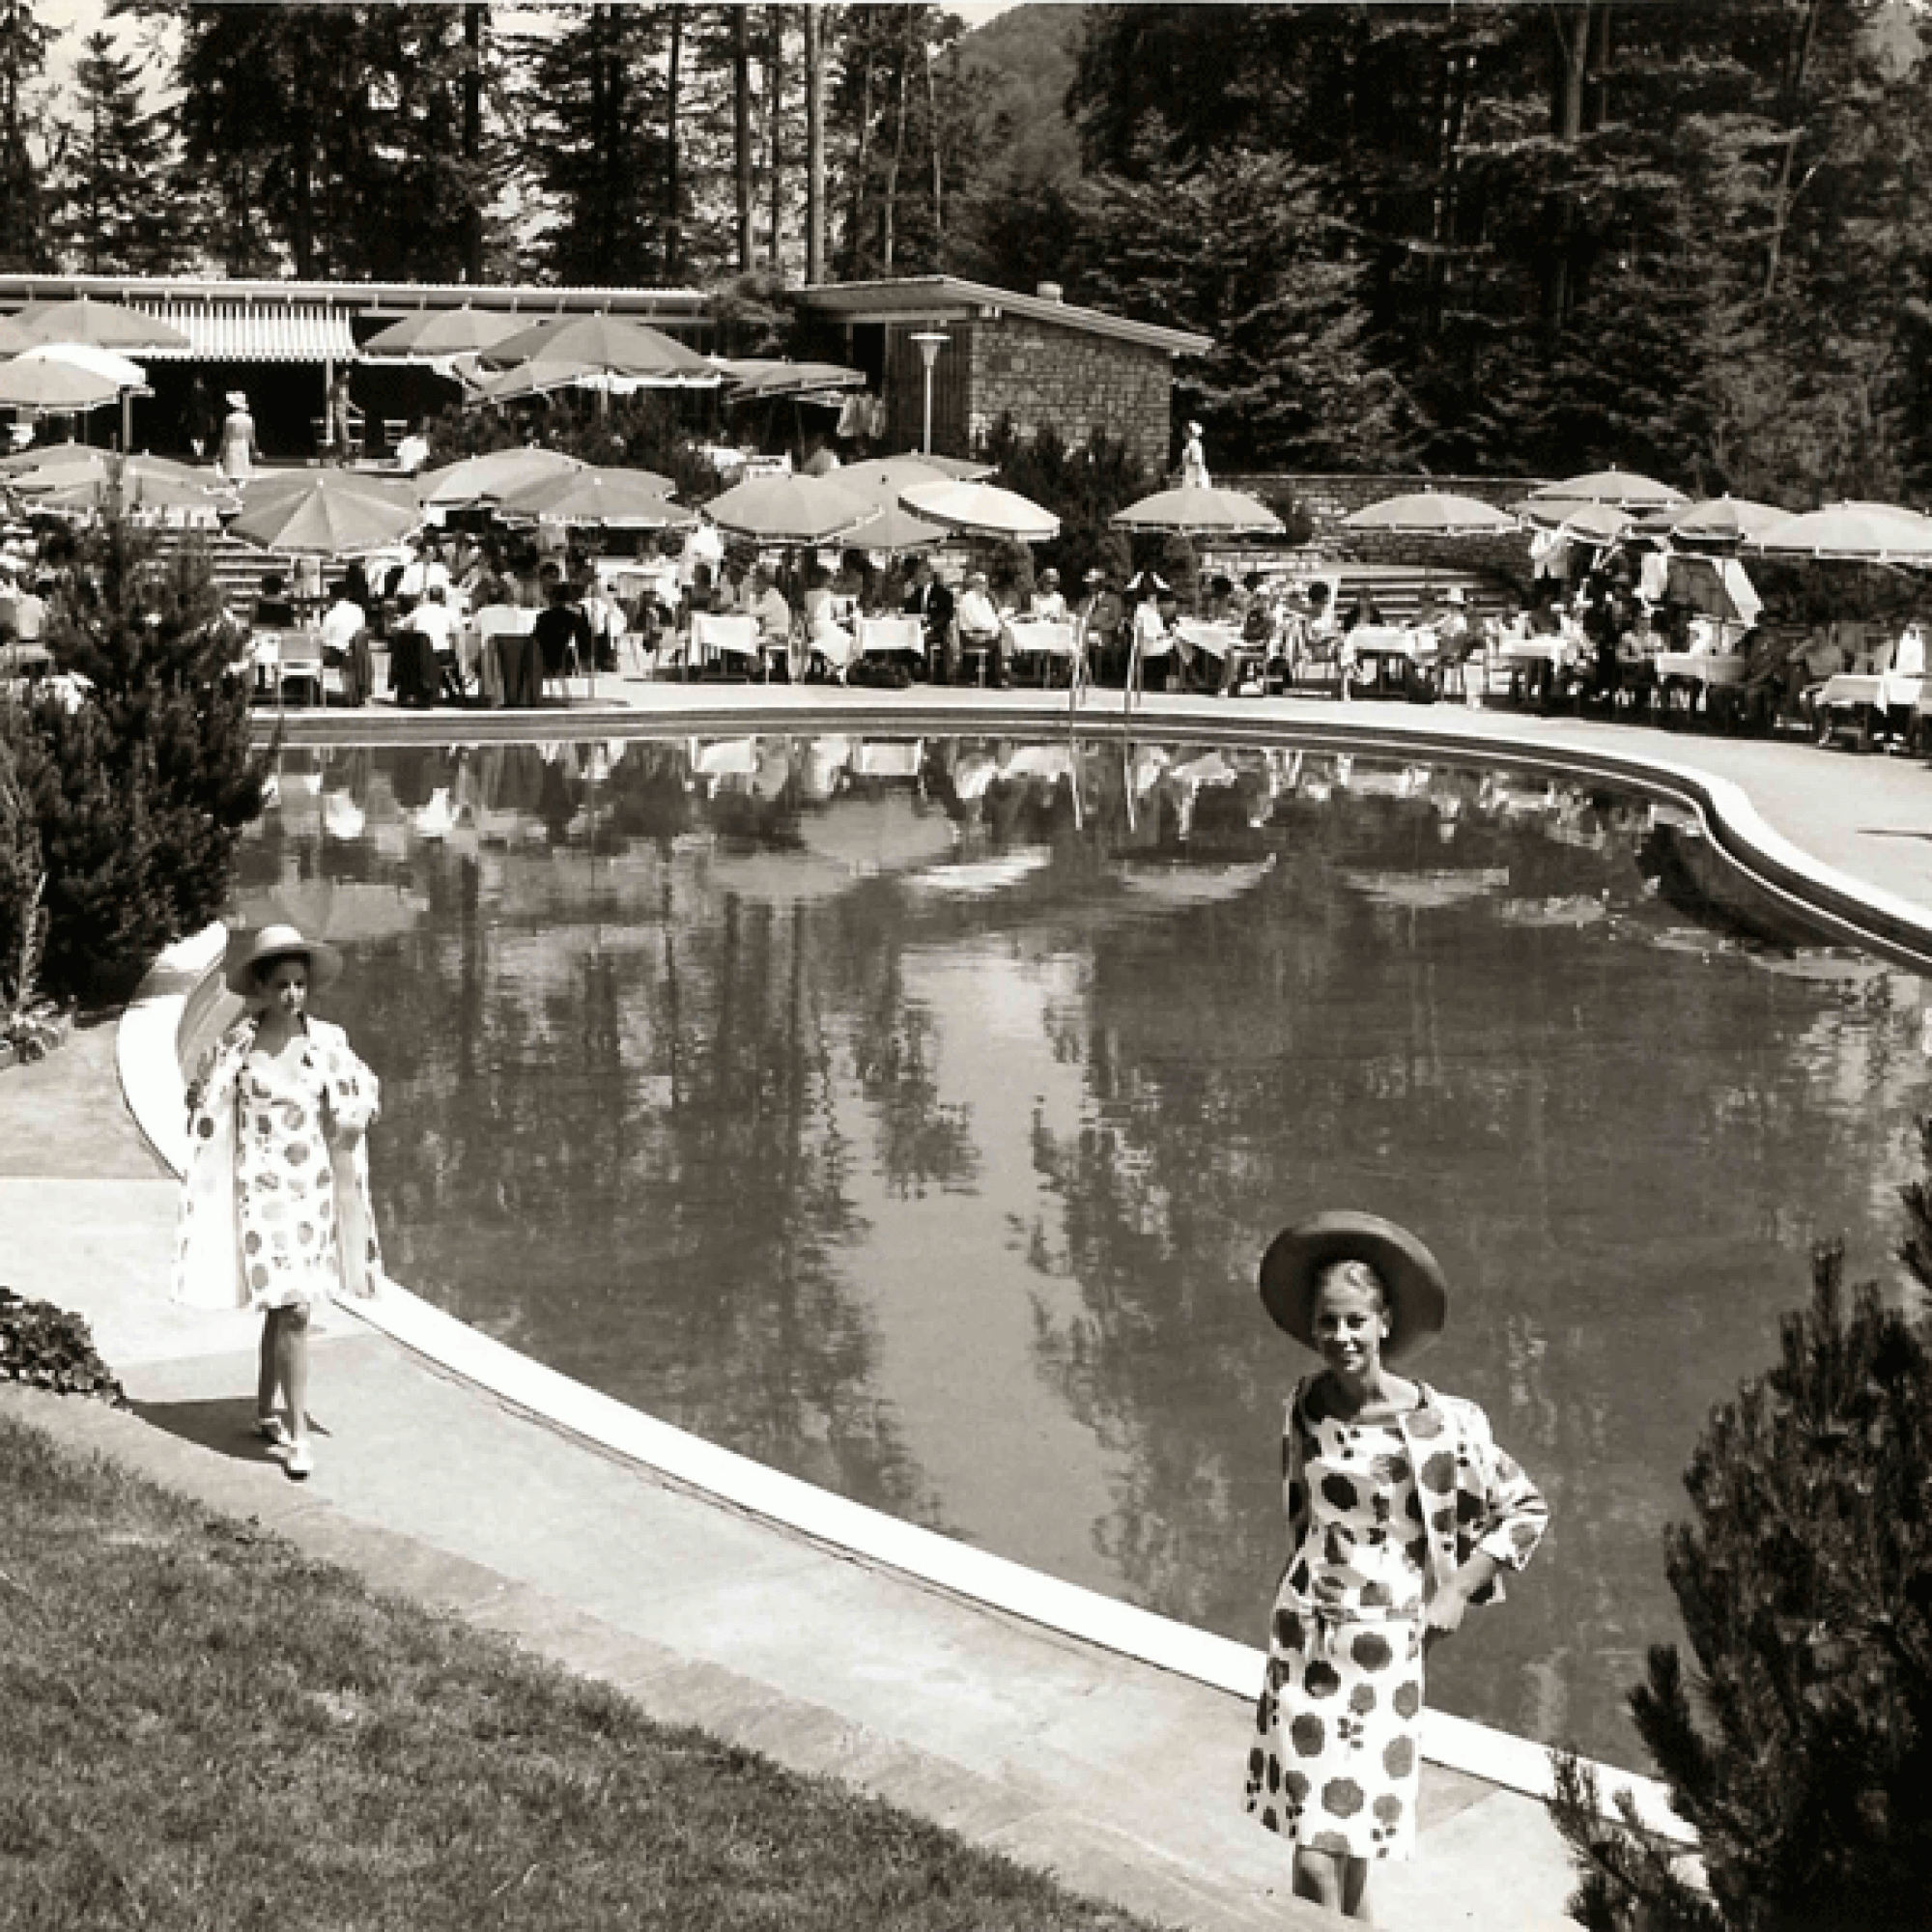 Das Bürgenstock-Freibad während einer Modenschau in den 60er-Jahren. Aufnahme aus dem Privatalbum von Fred Hausheer, Direktor der Bürgenstock-Hotellier in den 60er-Jahren. (zvg)